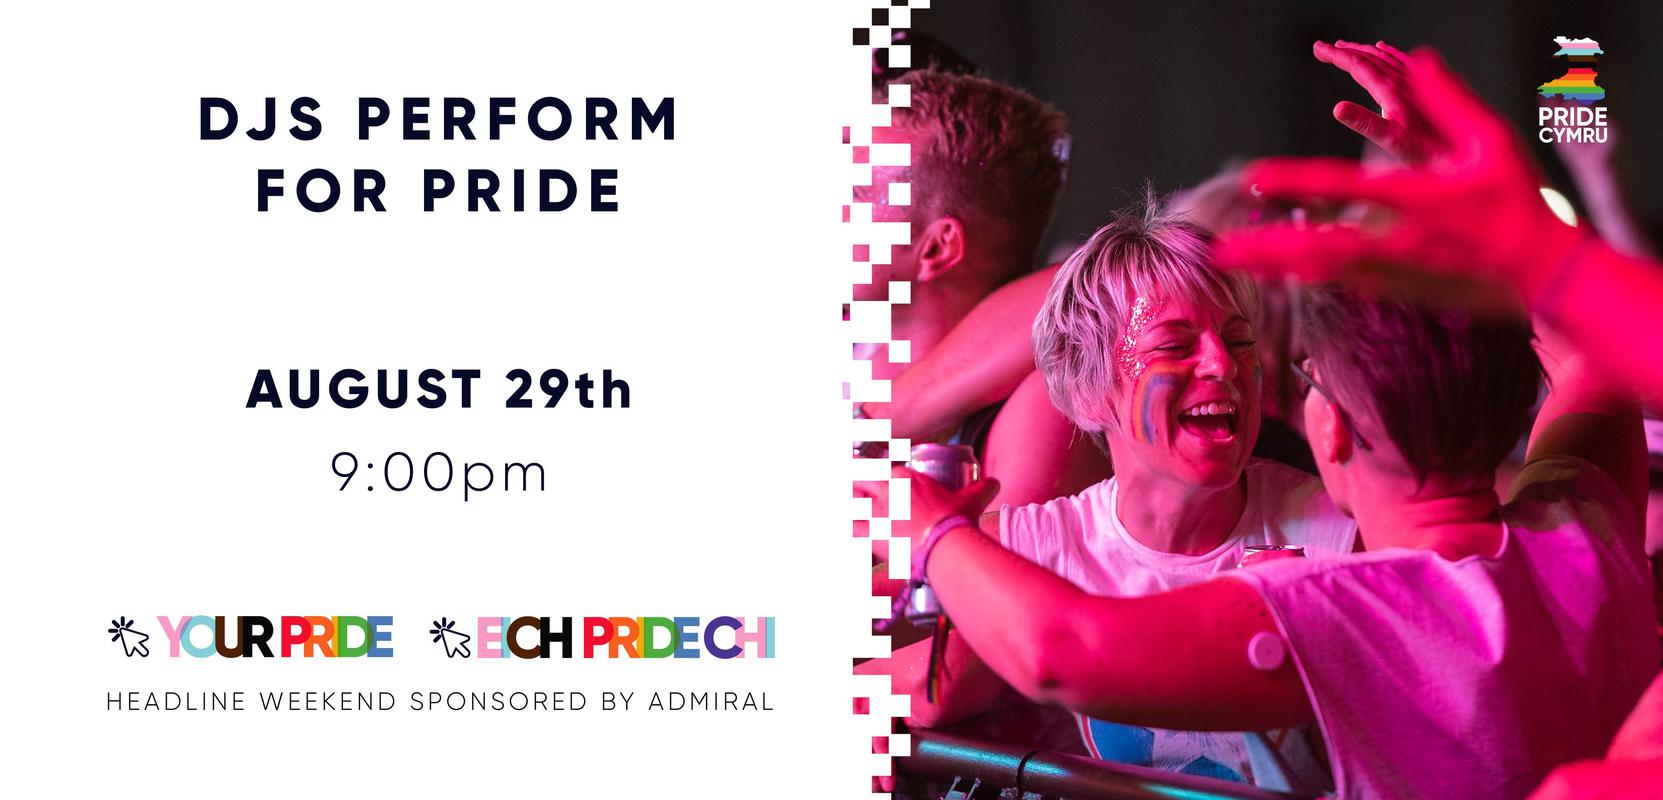 Digital flyer created to promote Pride Cymru's Big Online Week, 24 - 30 August 2020.